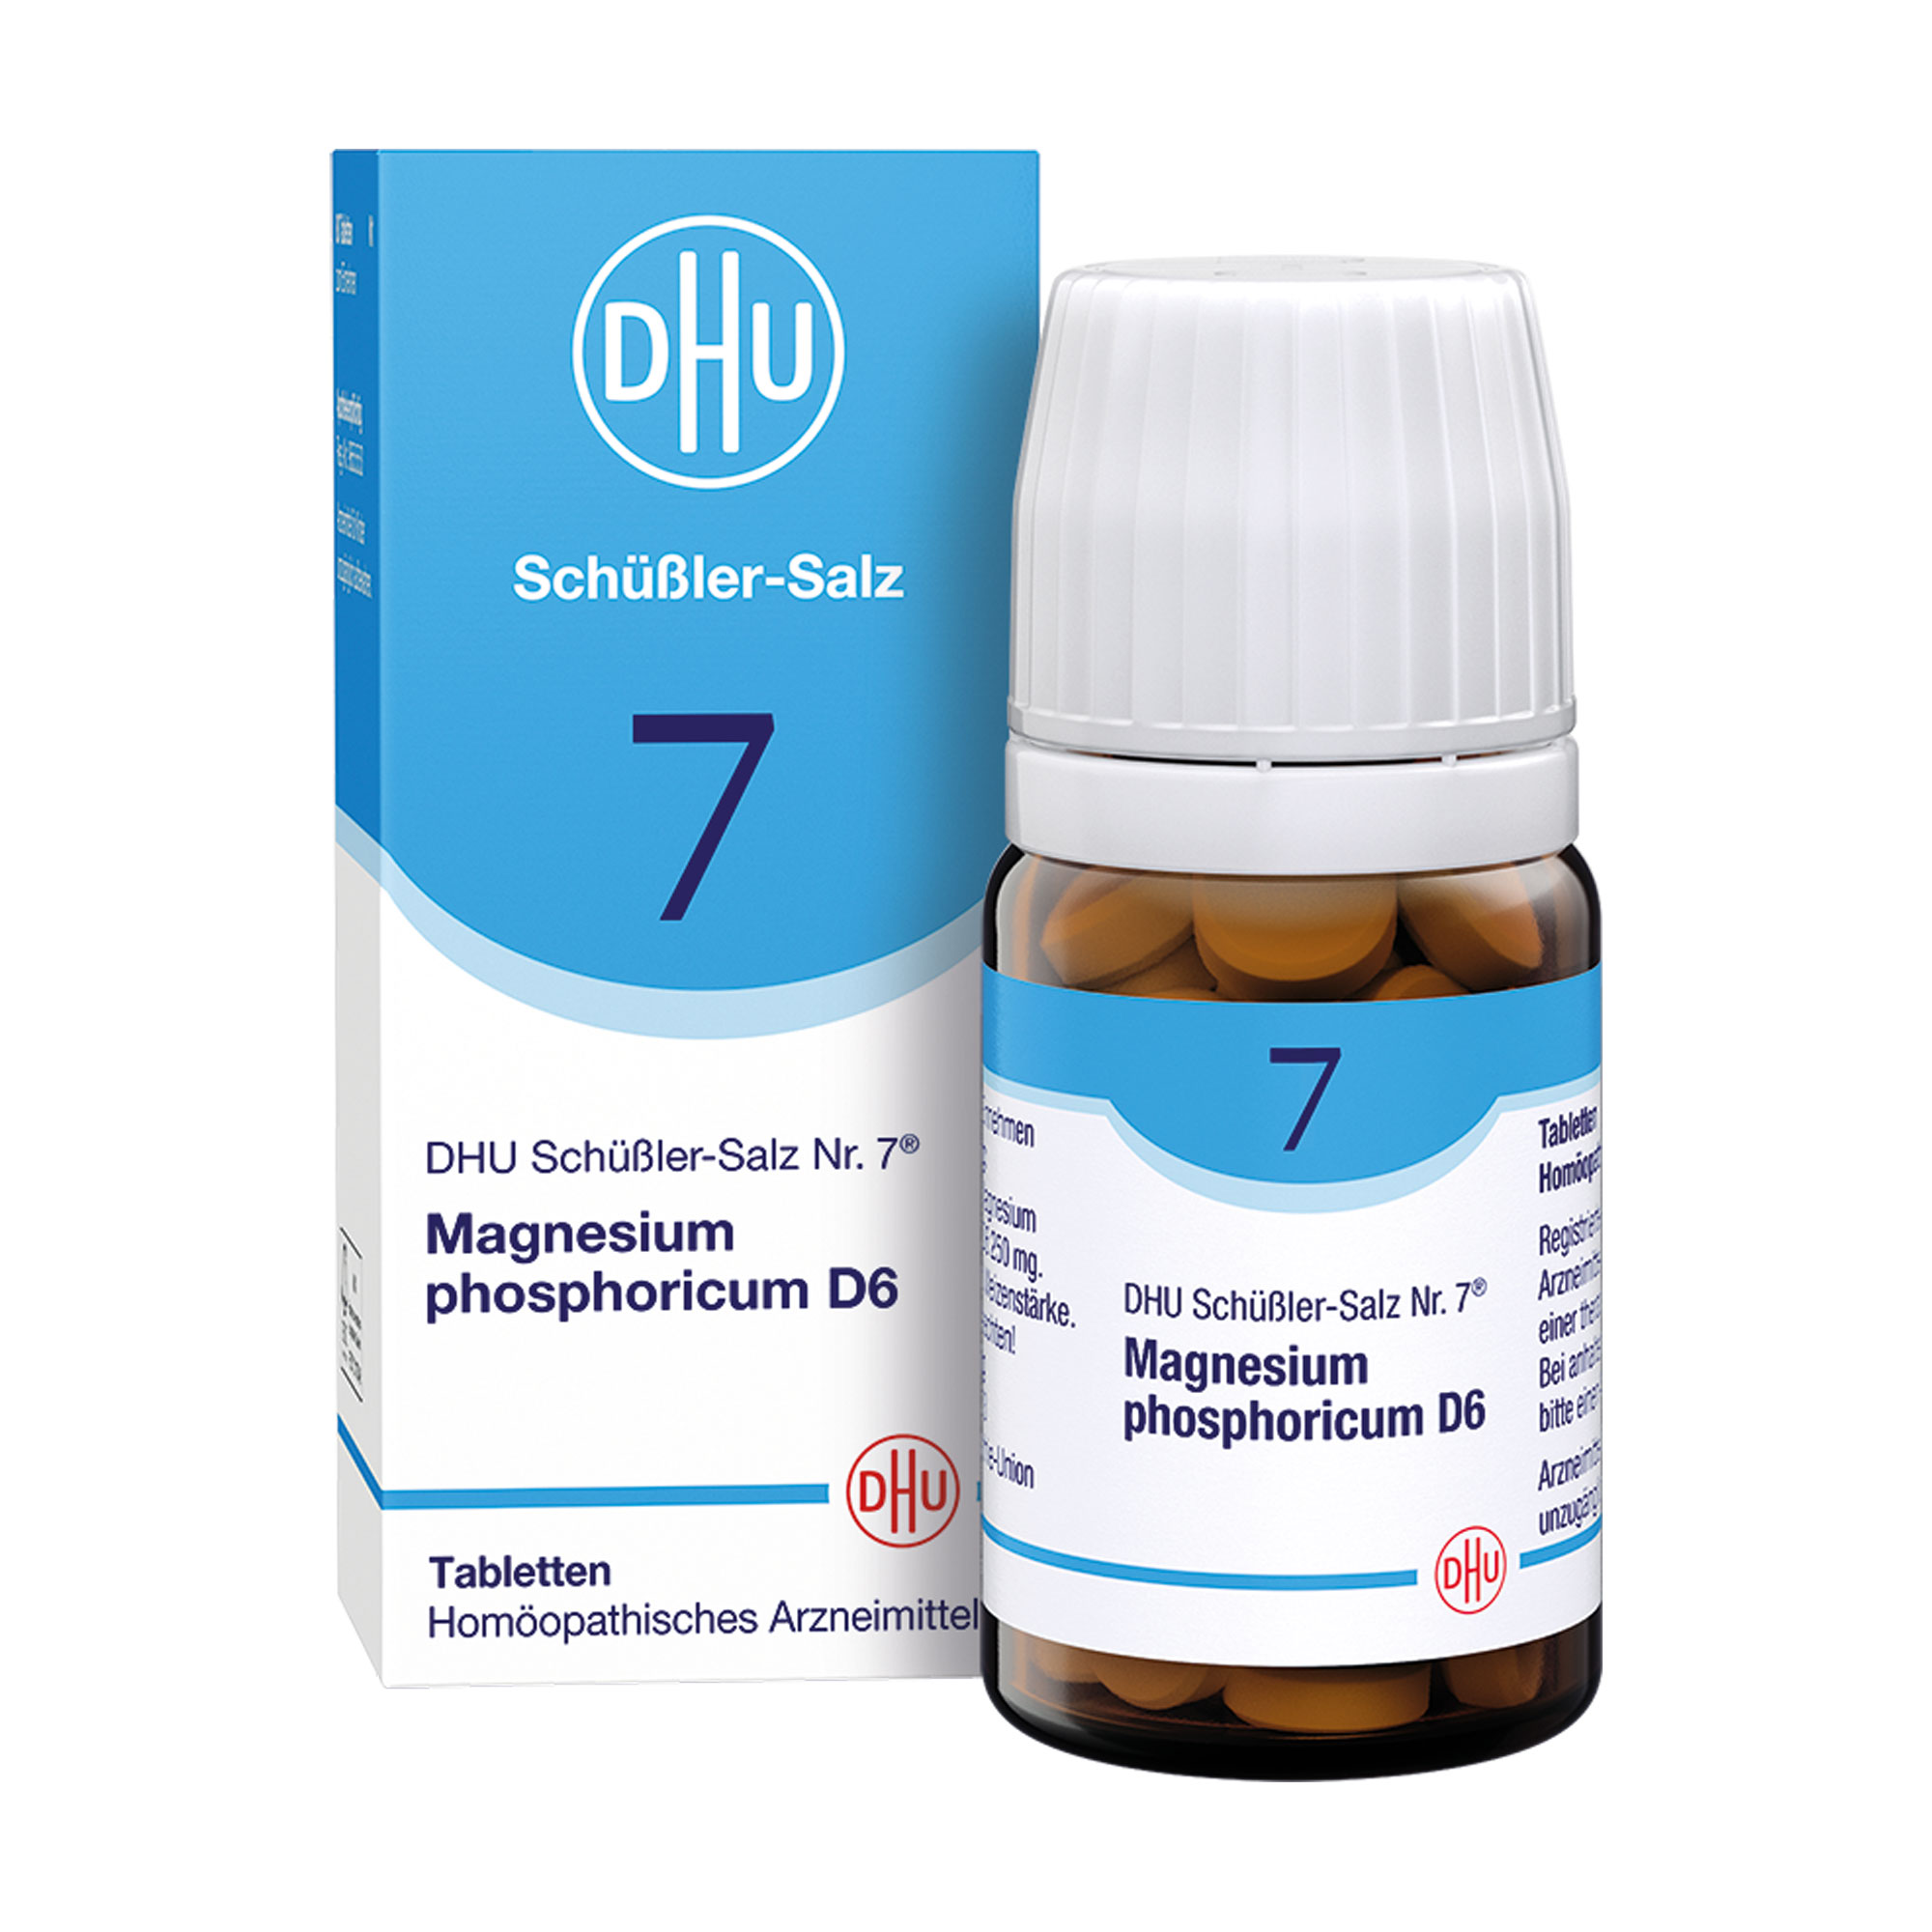 Homöopathisches Arzneimittel mit Magnesium phosphoricum Trit. D6.